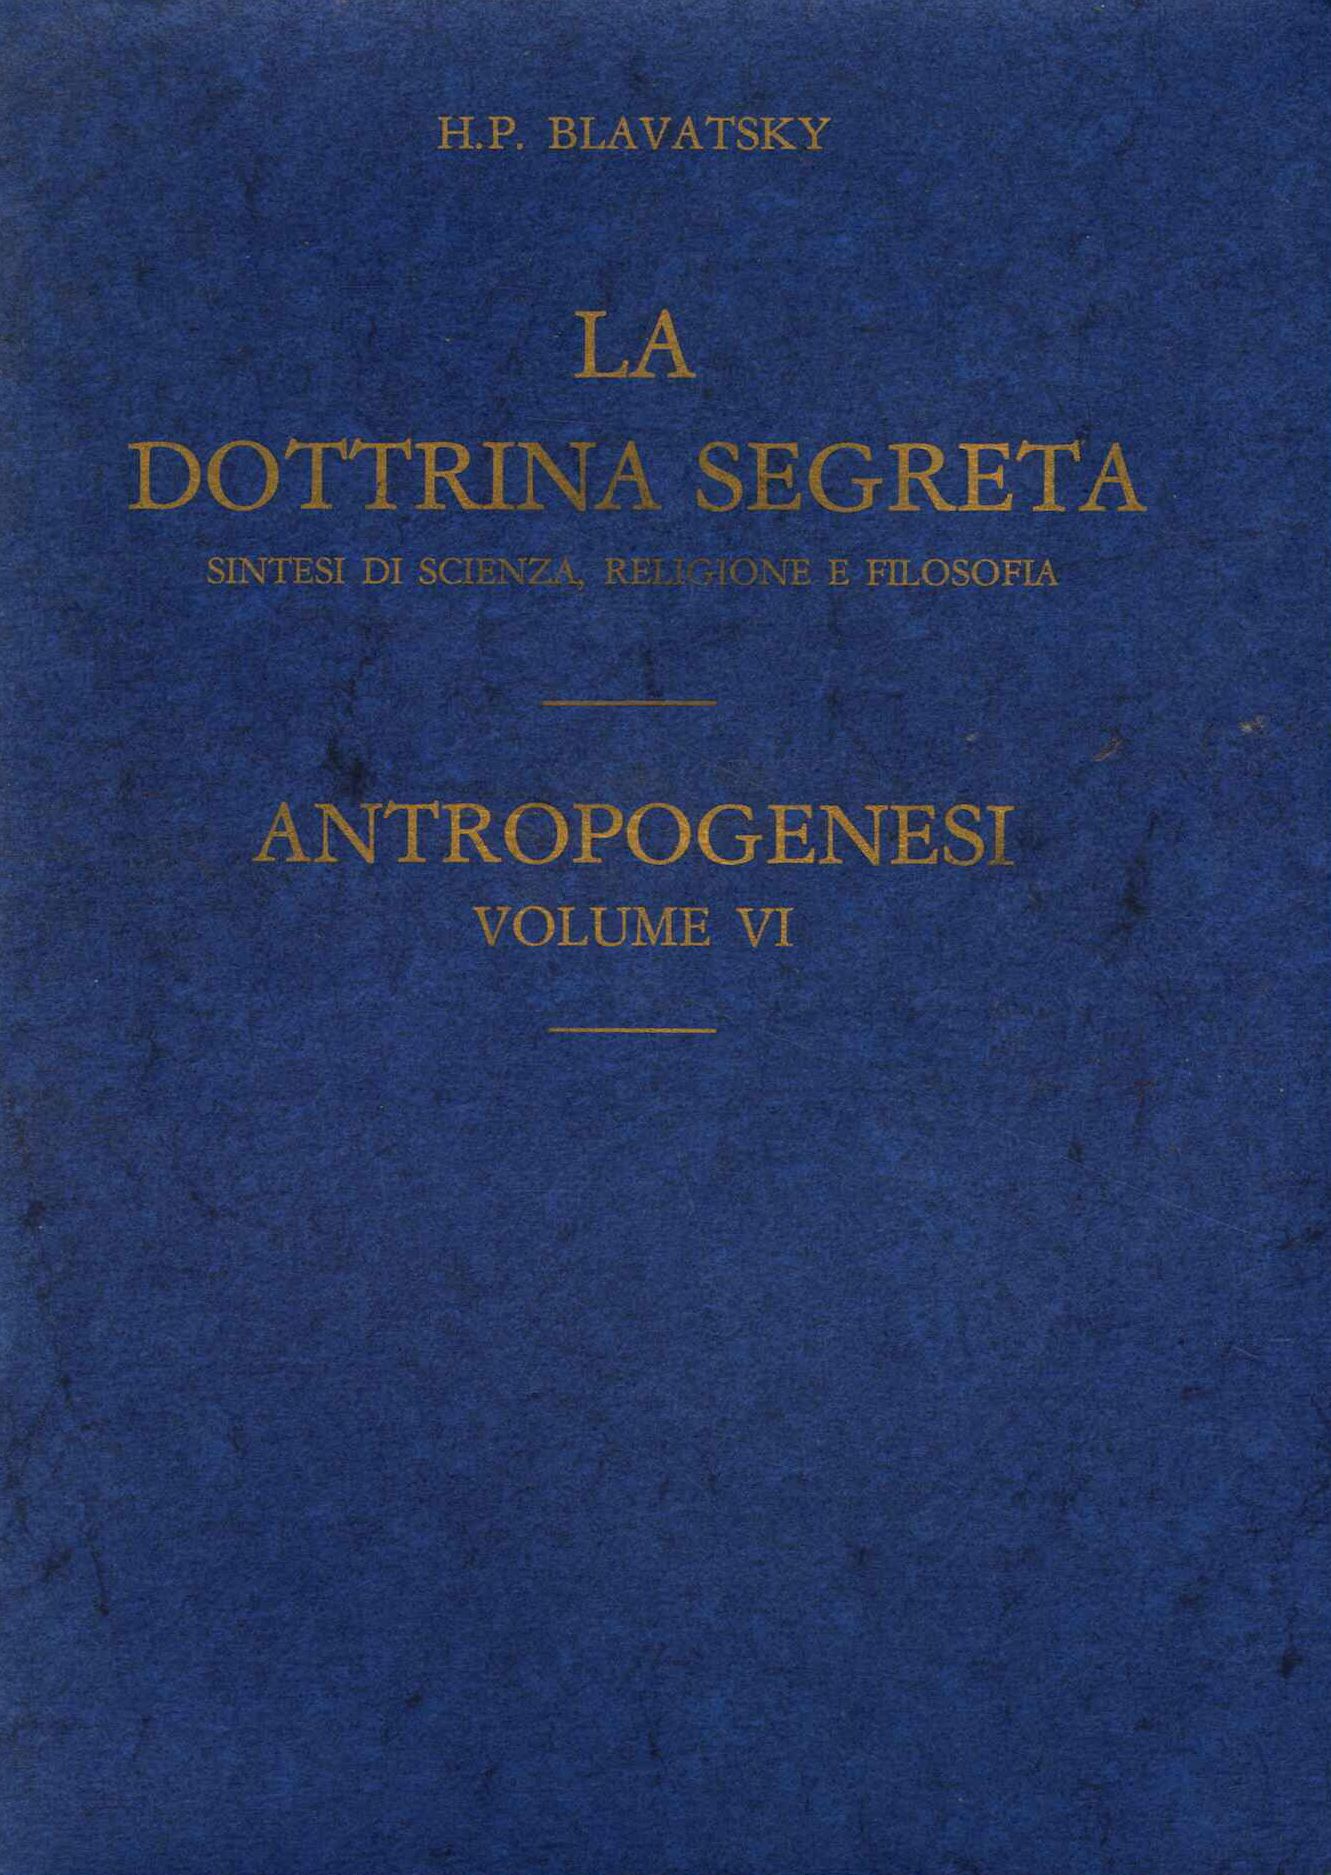 La dottrina segreta. Antropogenesi vol. VI